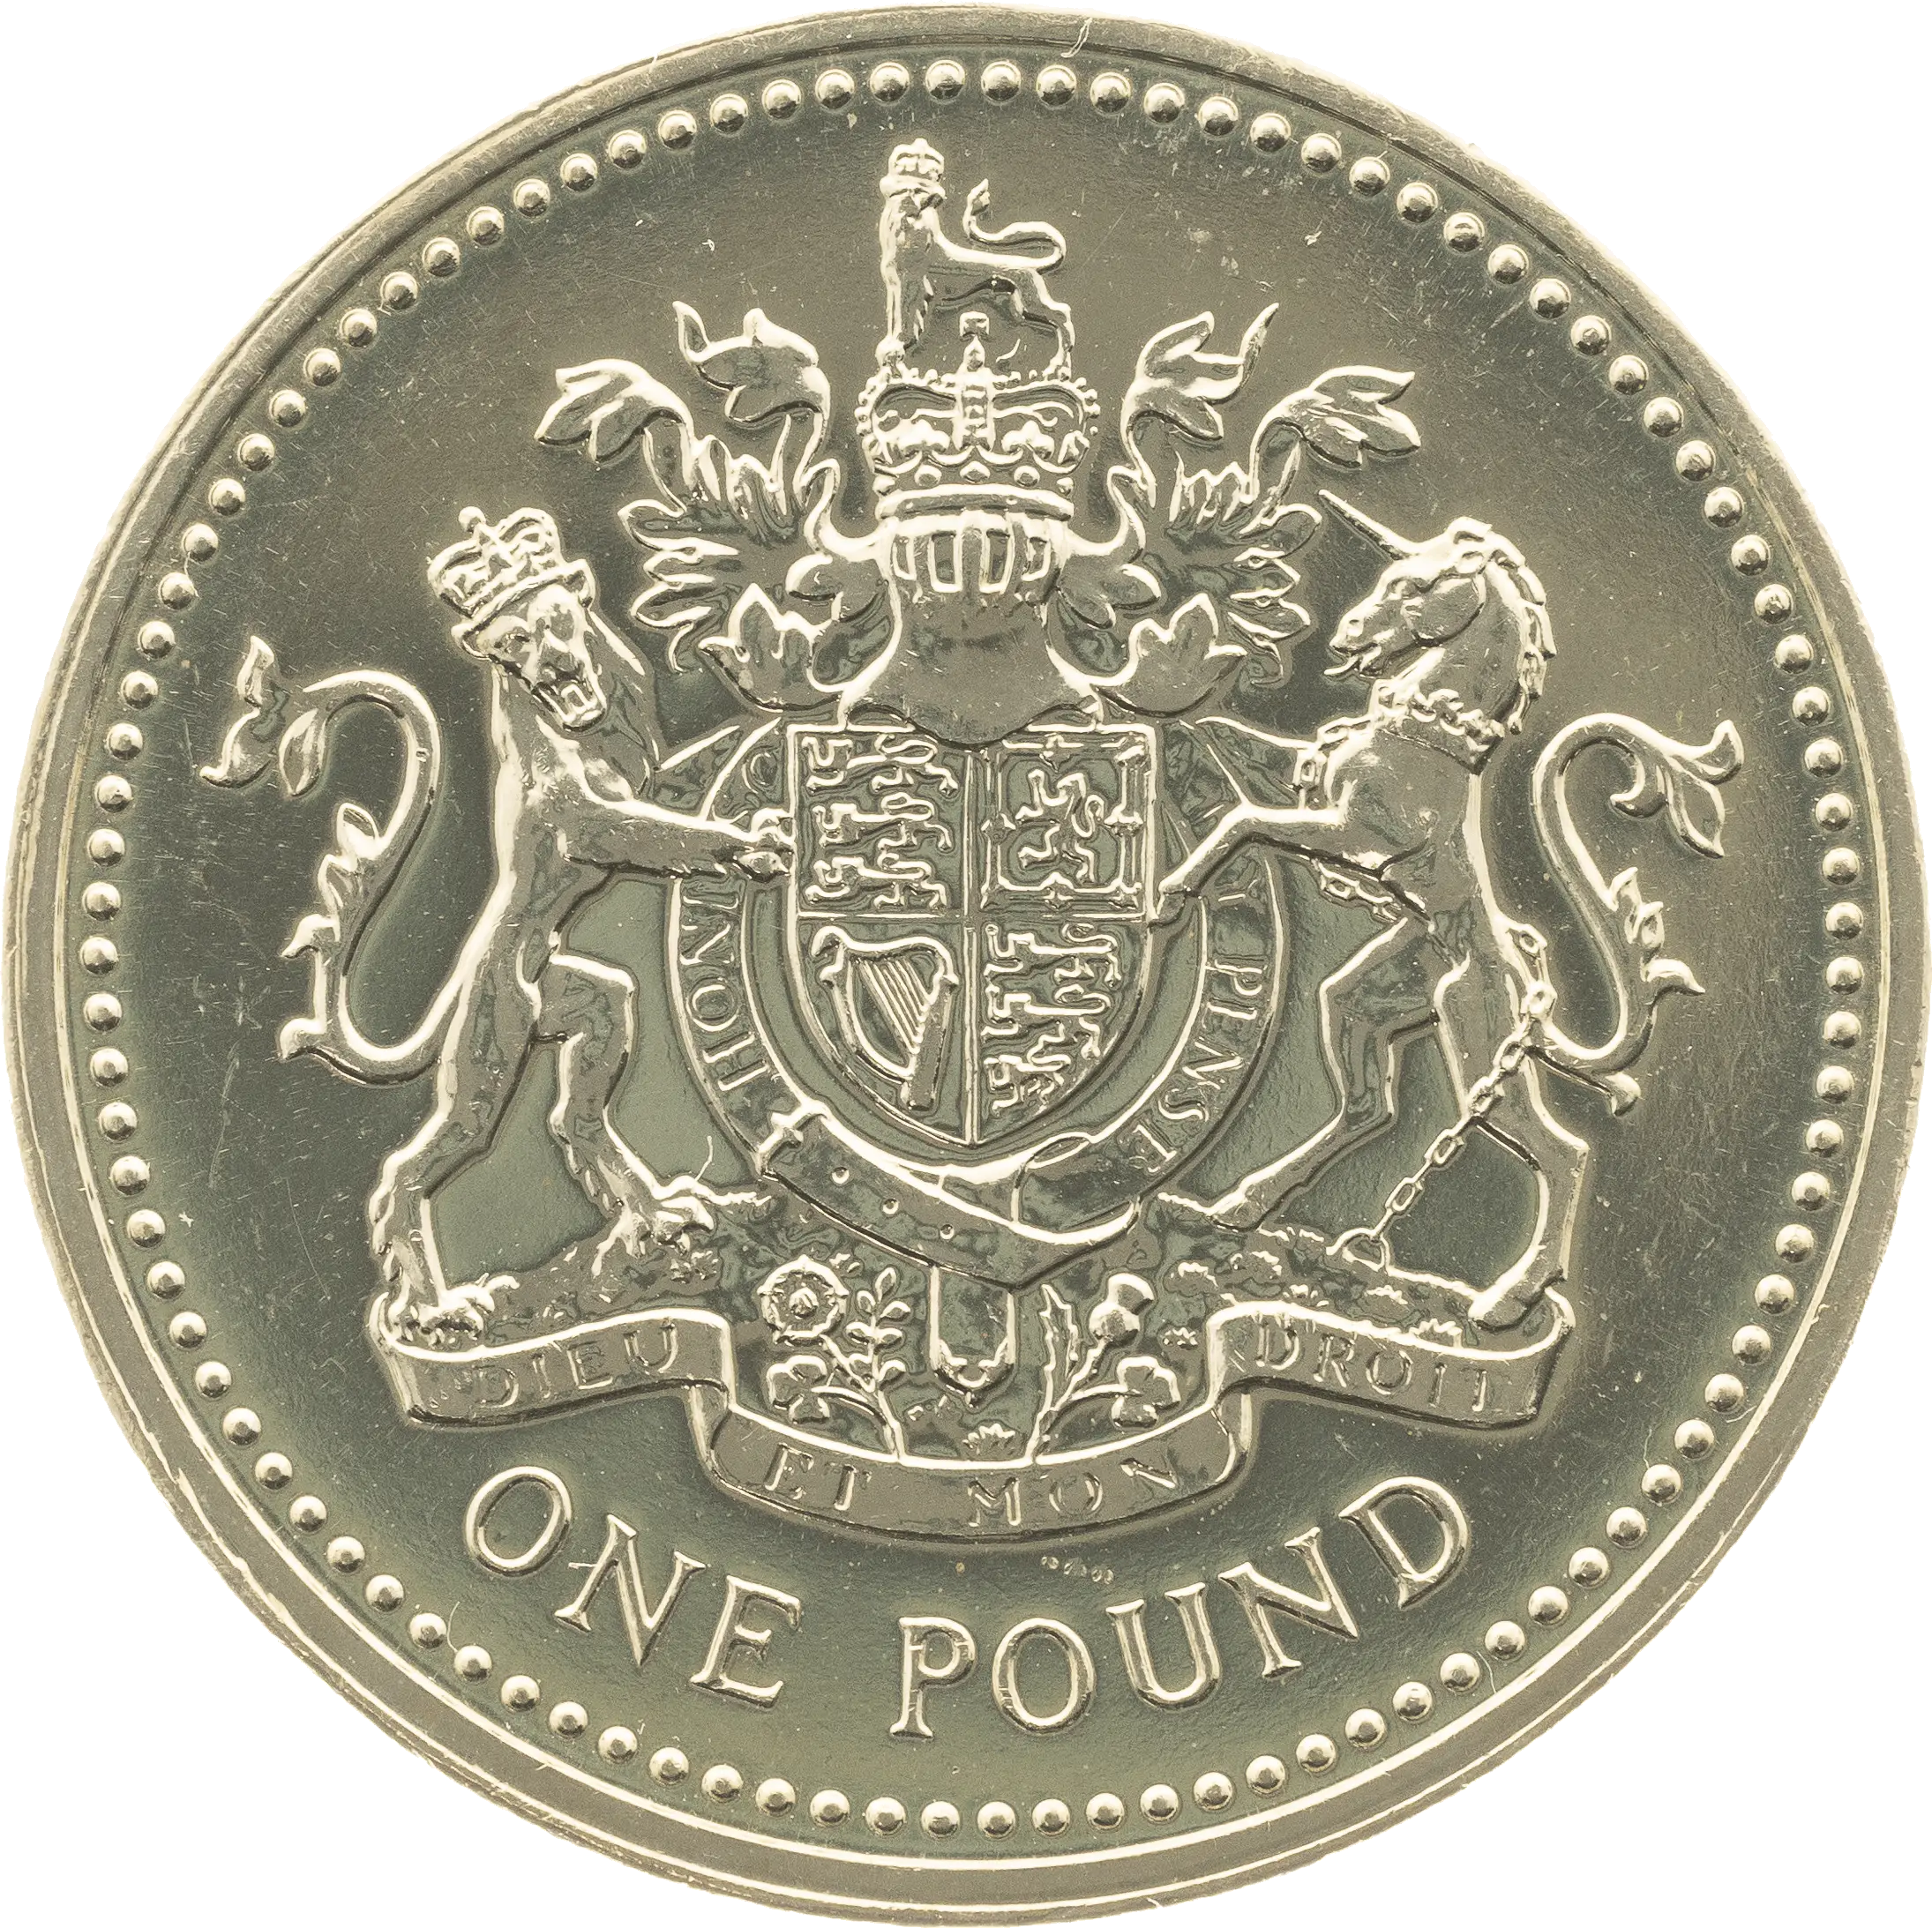 1983 £1 coin reverse design